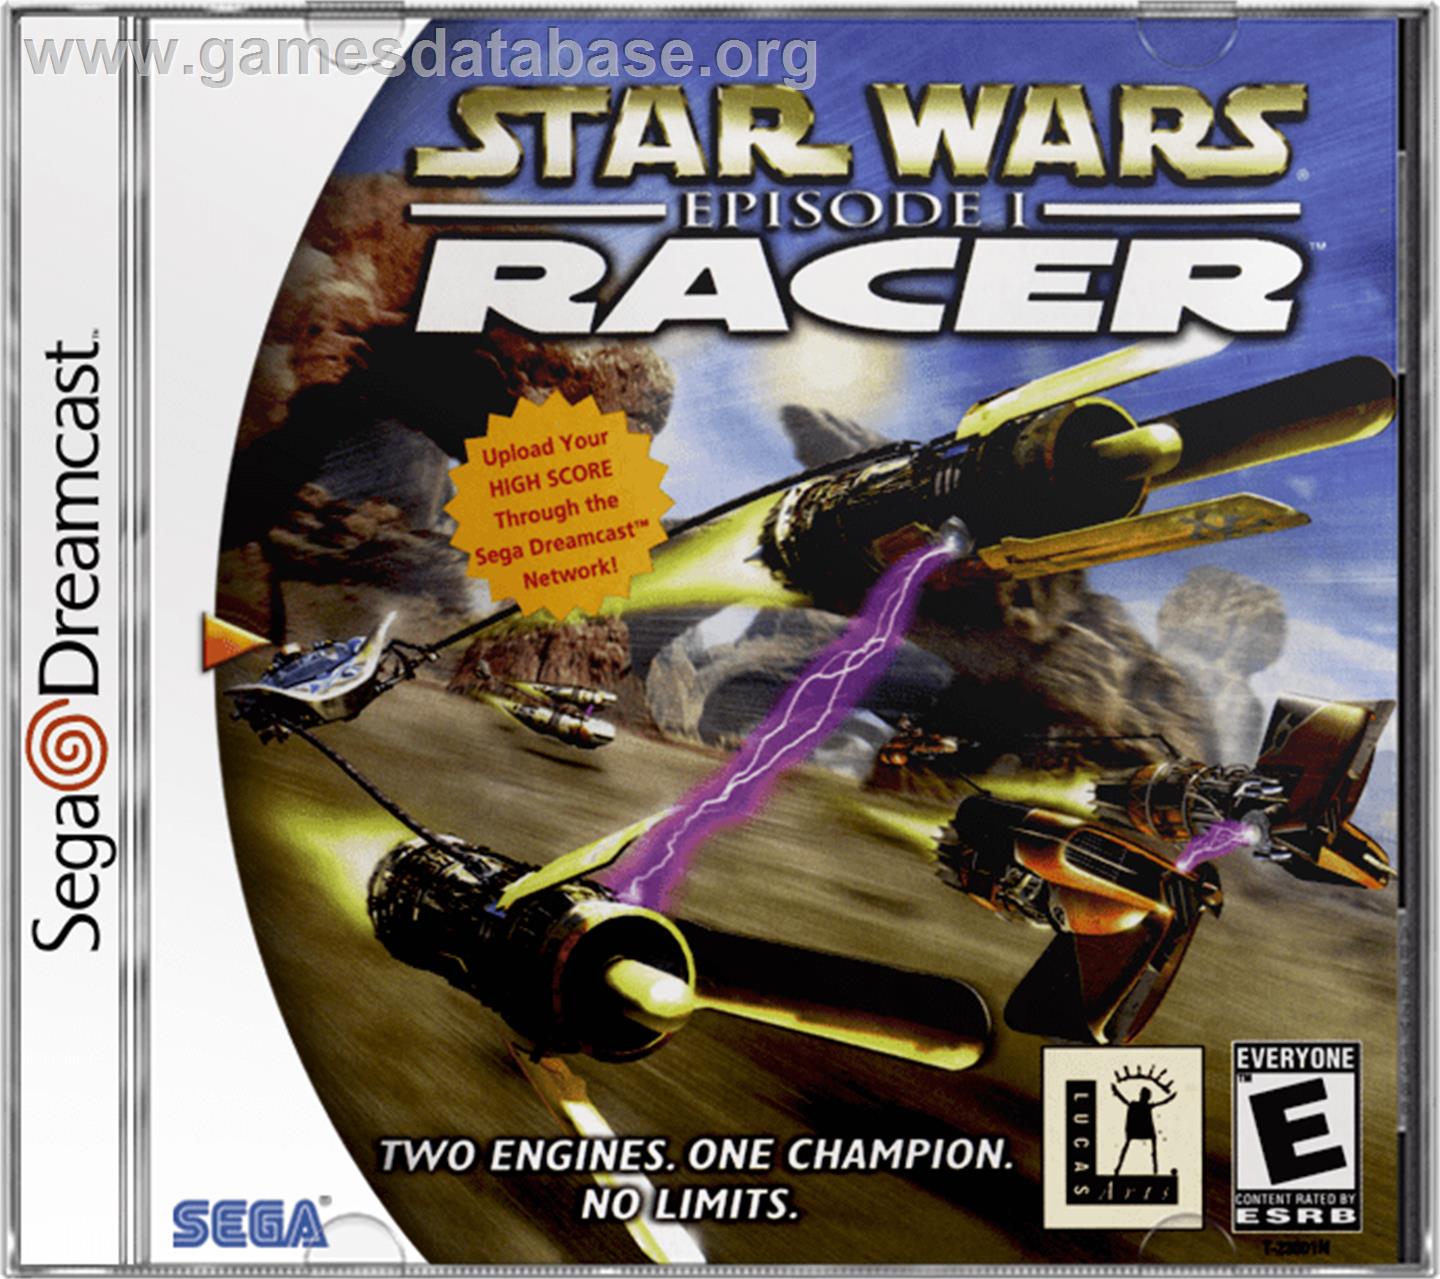 Star Wars: Episode I - Racer - Sega Dreamcast - Artwork - Box